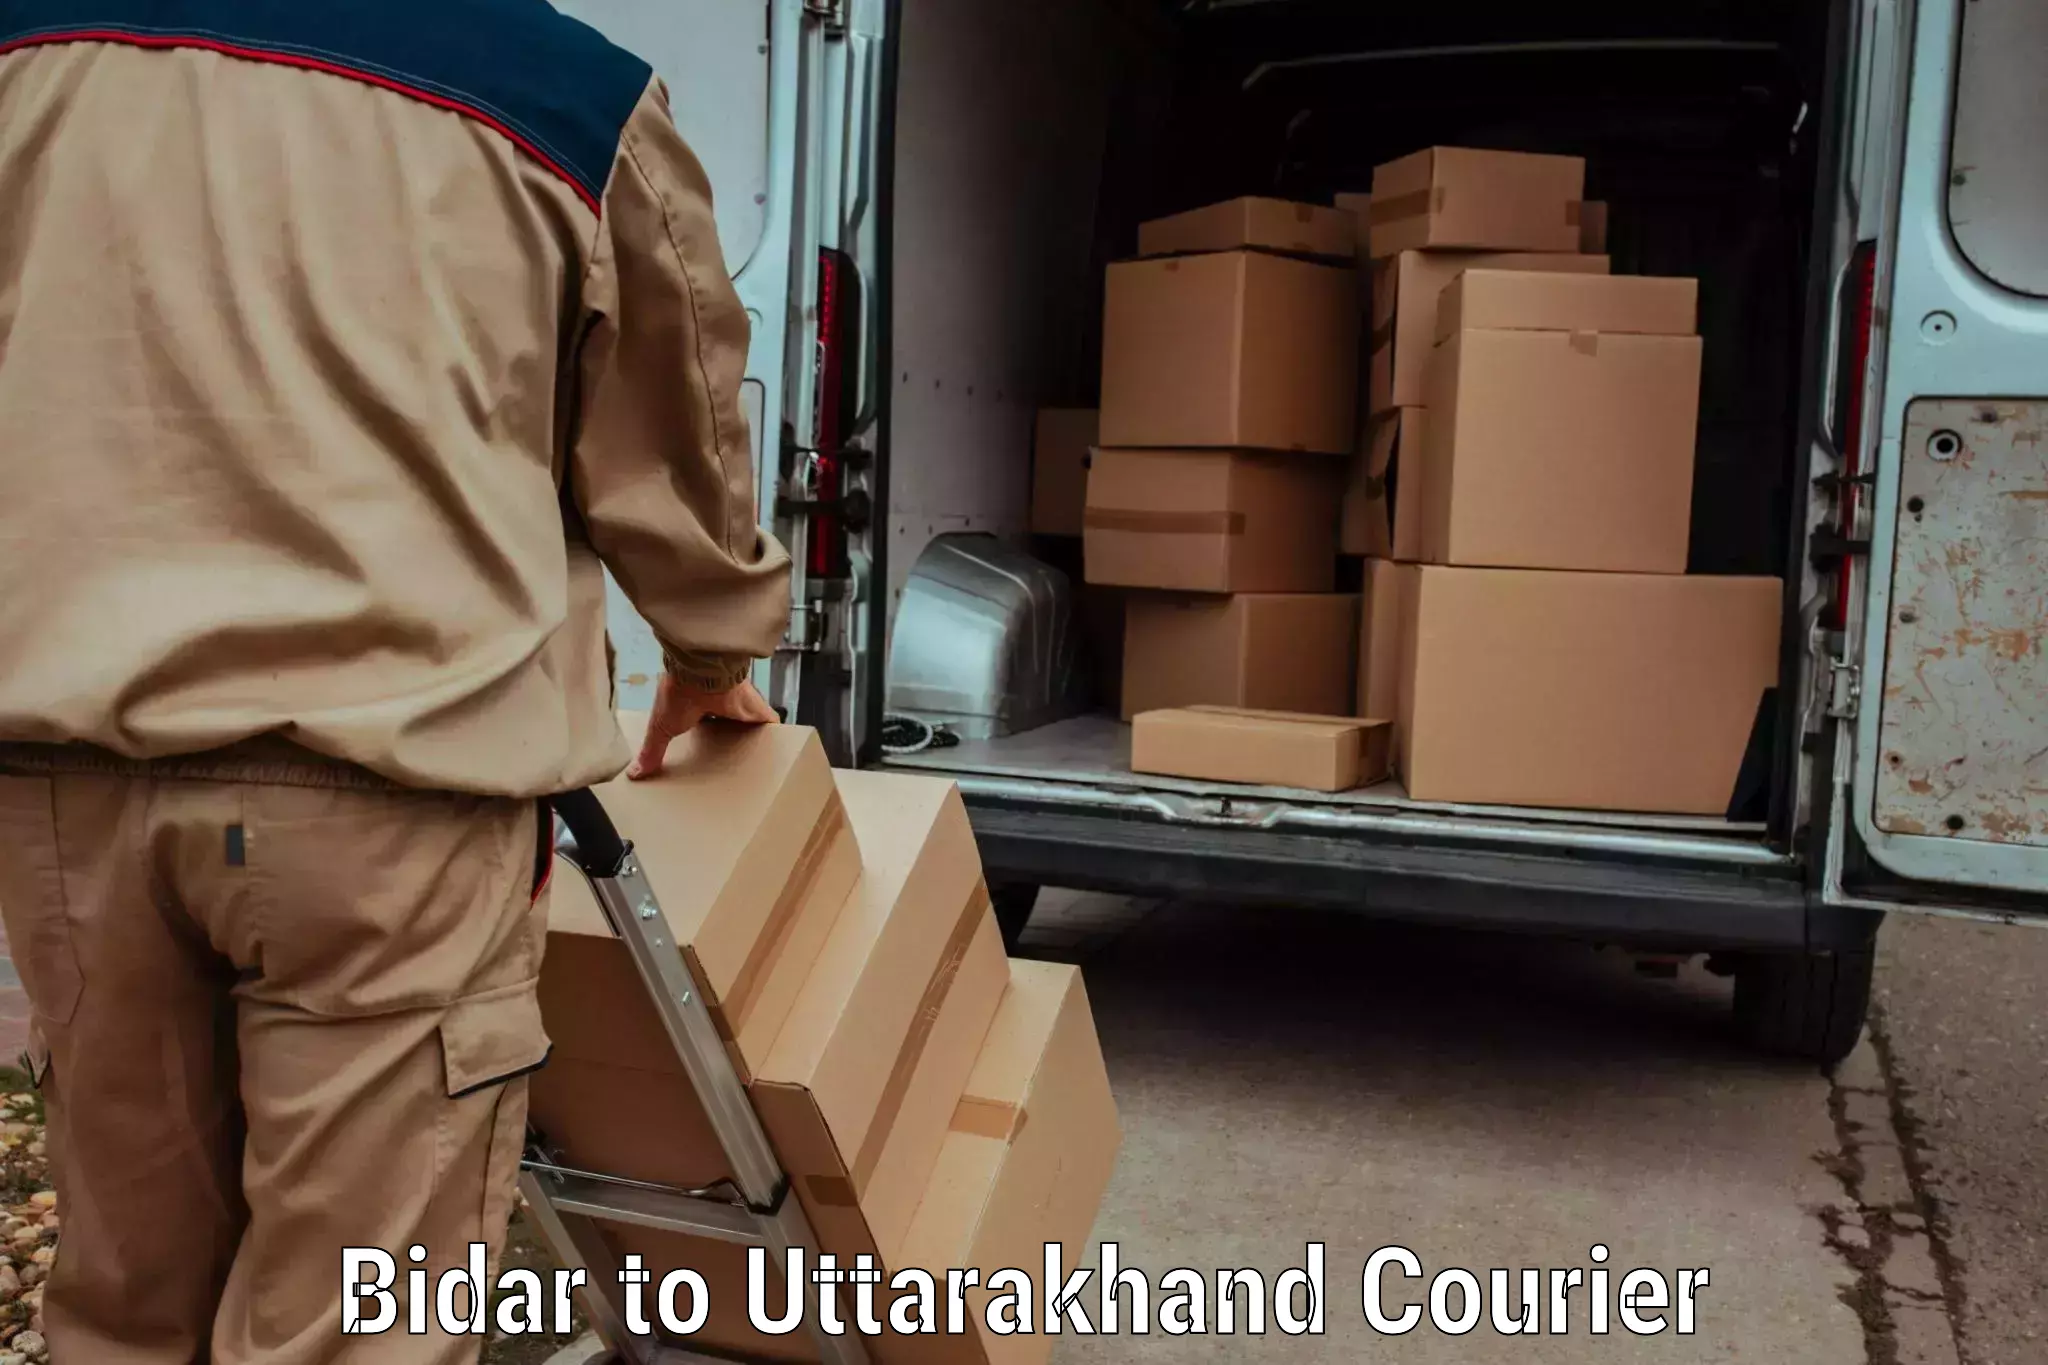 Doorstep delivery service Bidar to IIT Roorkee